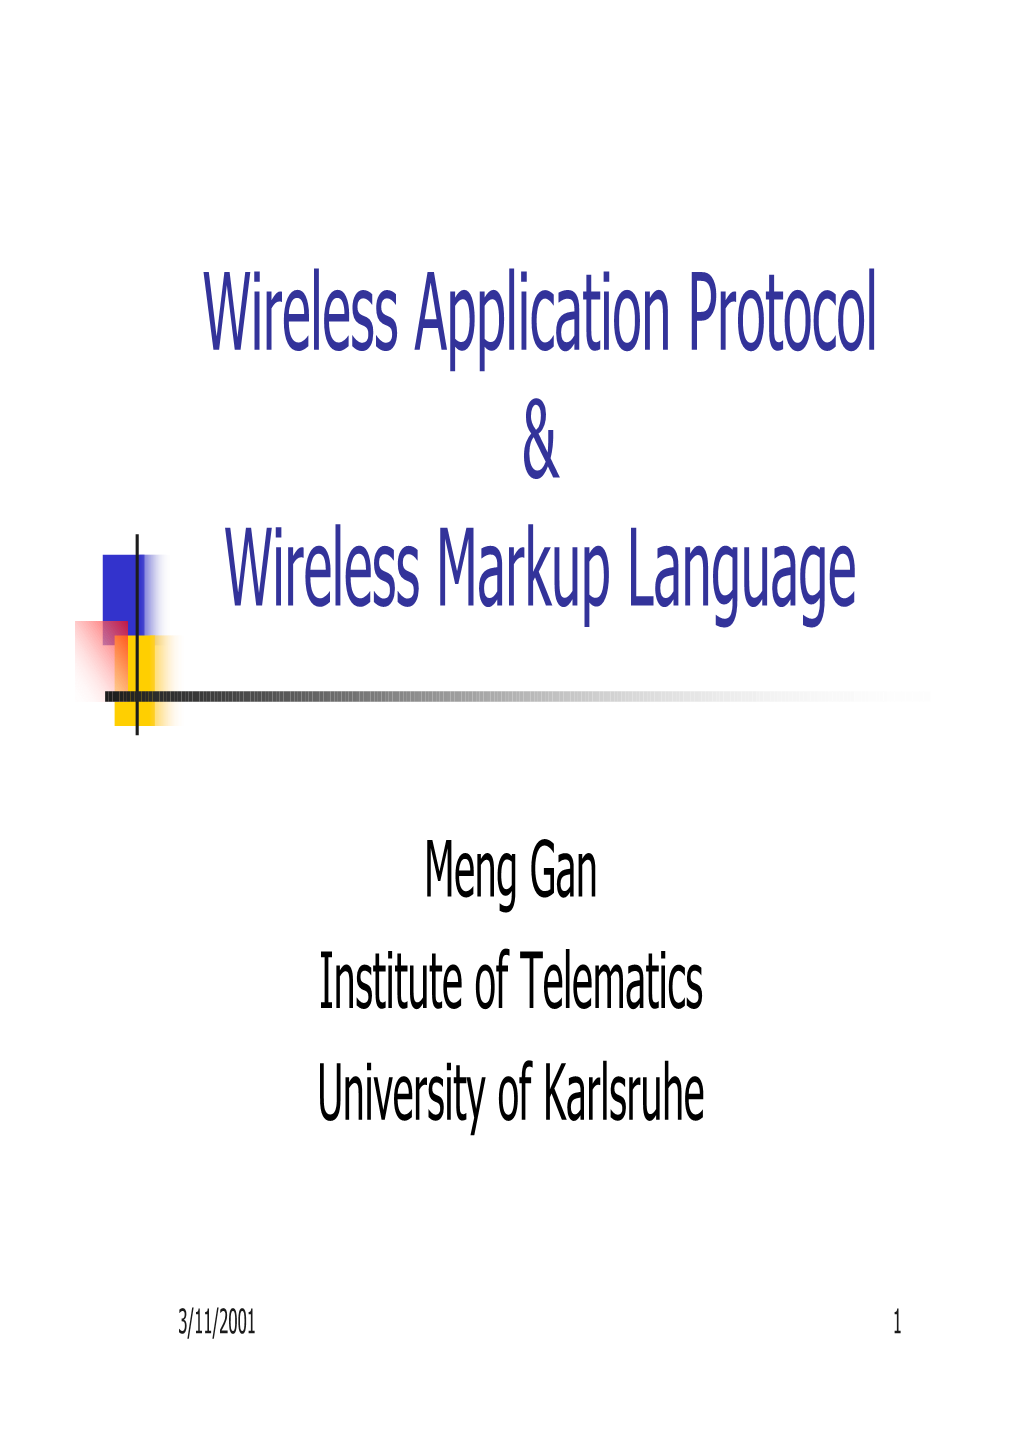 Wireless Application Protocol & Wireless Markup Language